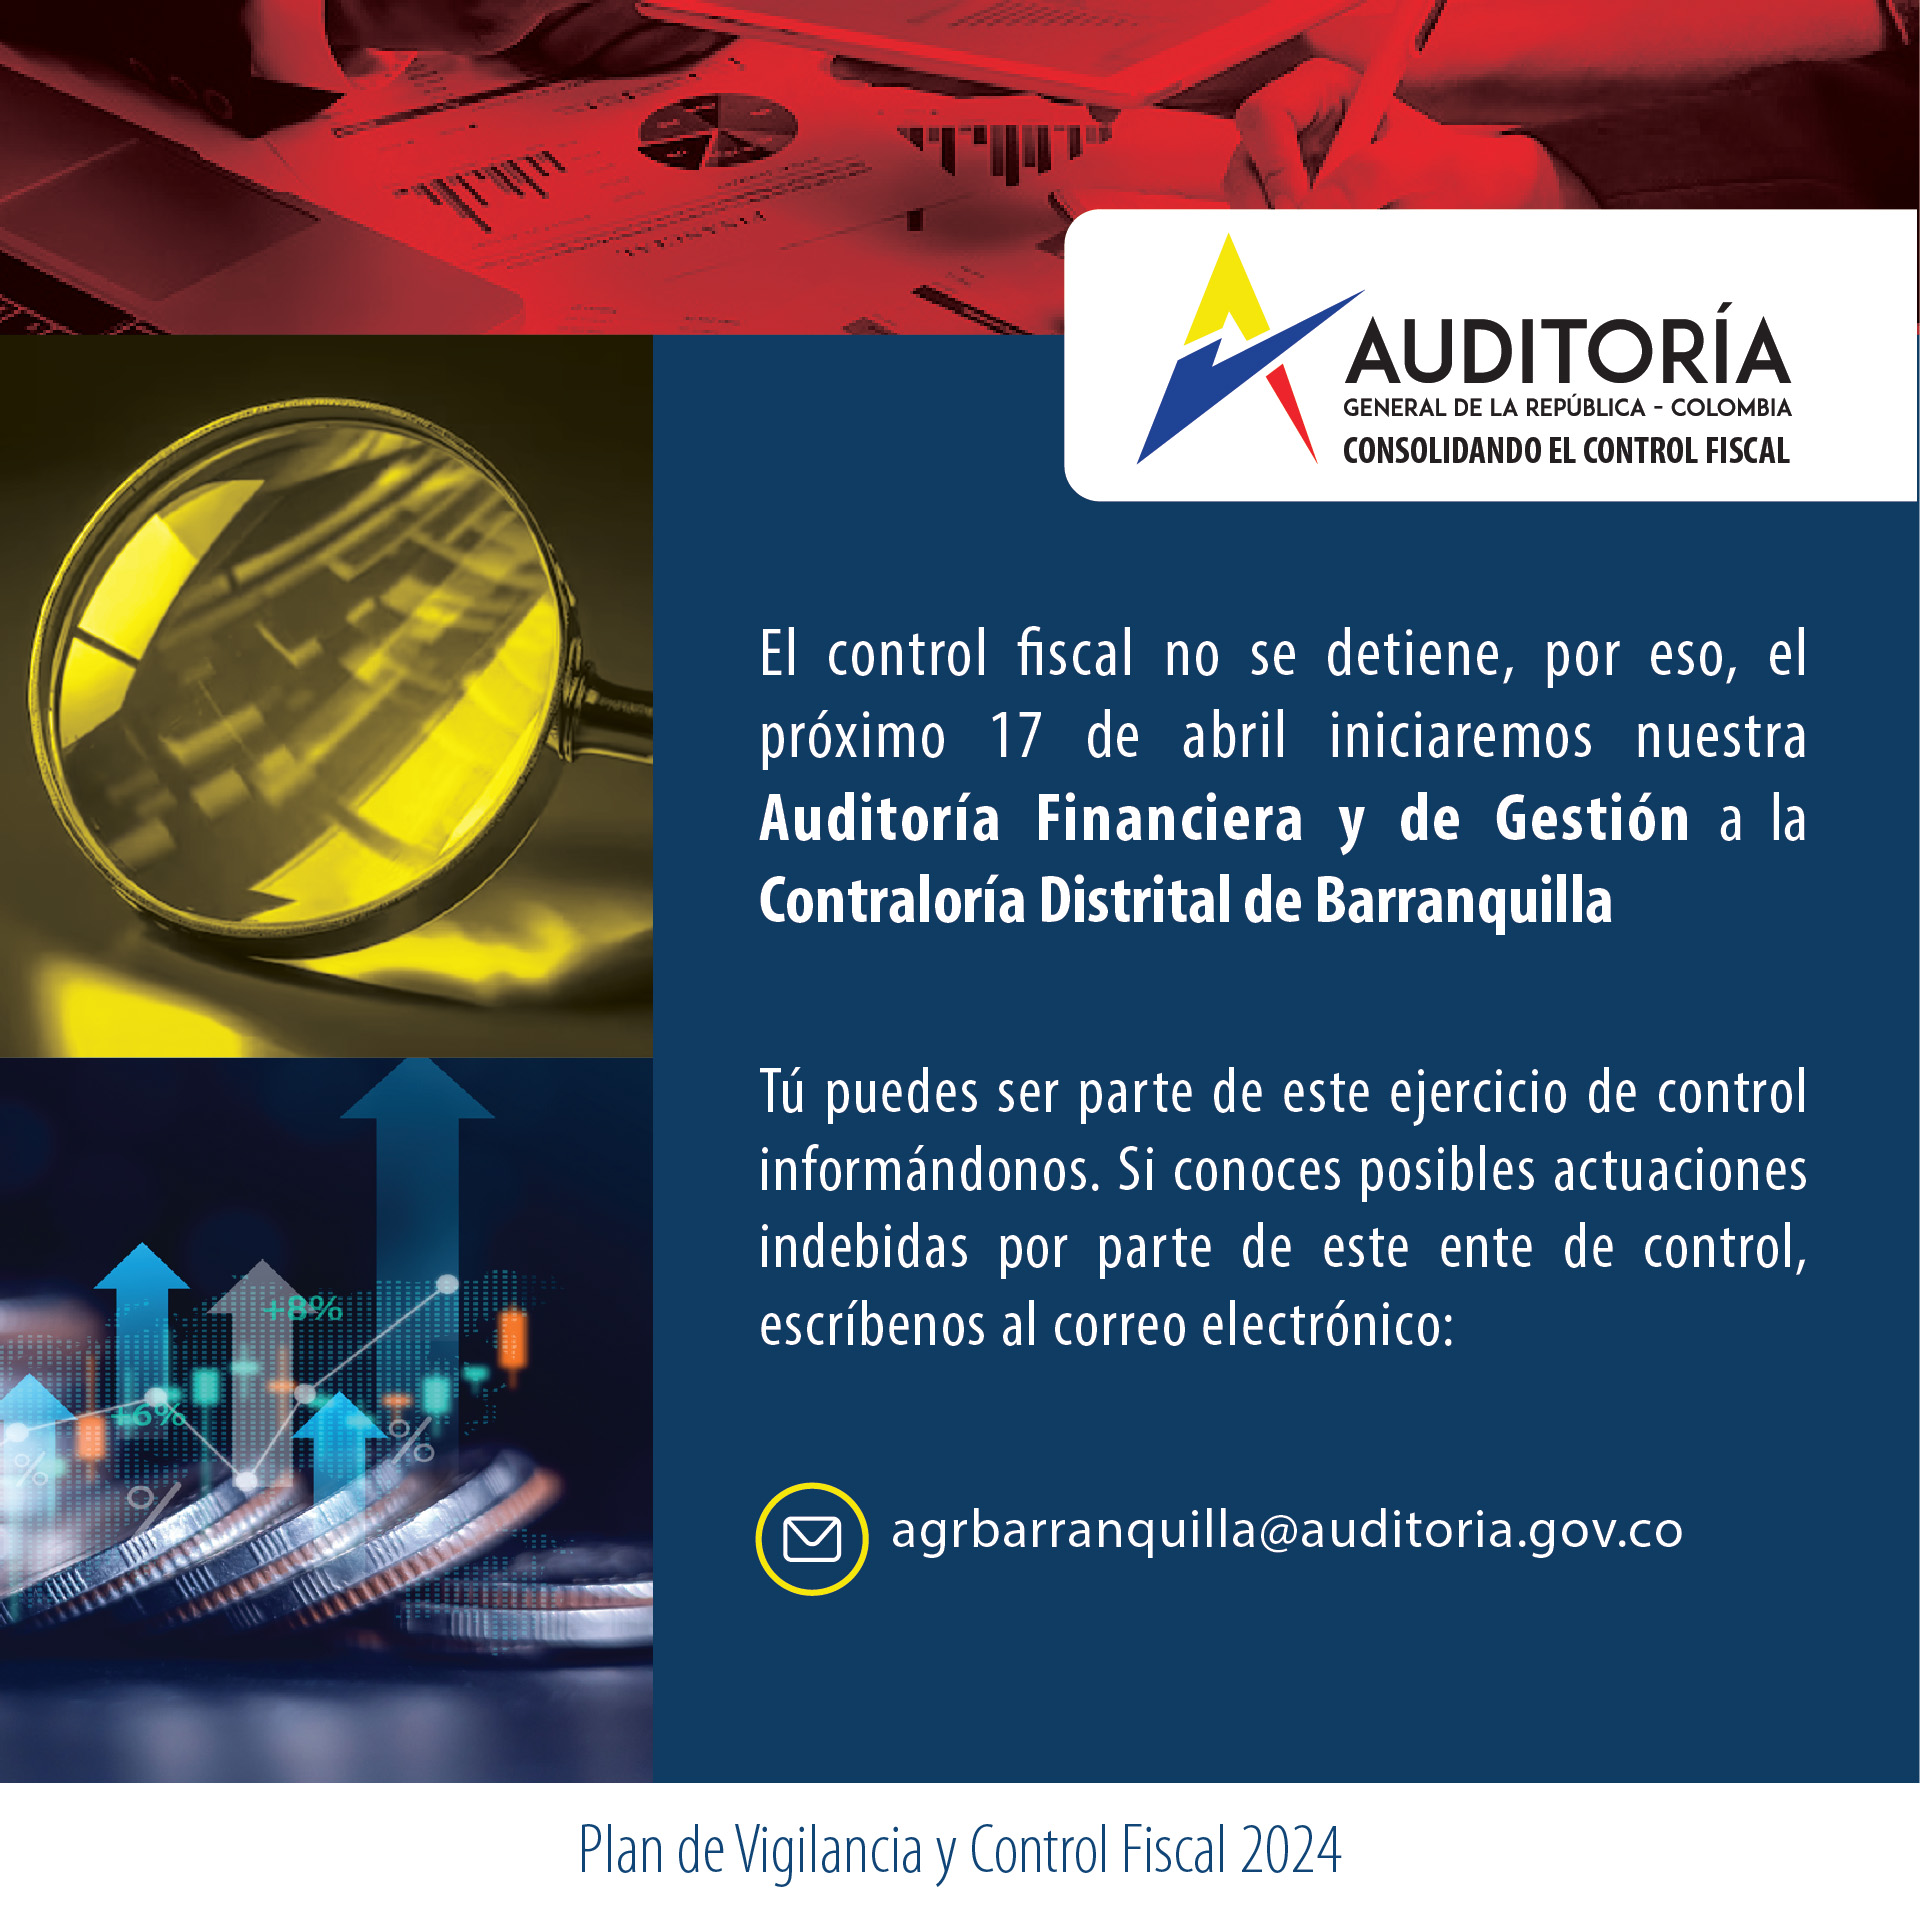 Invitación a ciudadanía a brindar información para Auditoría Financiera y de Gestión a Contraloría de Barranquilla